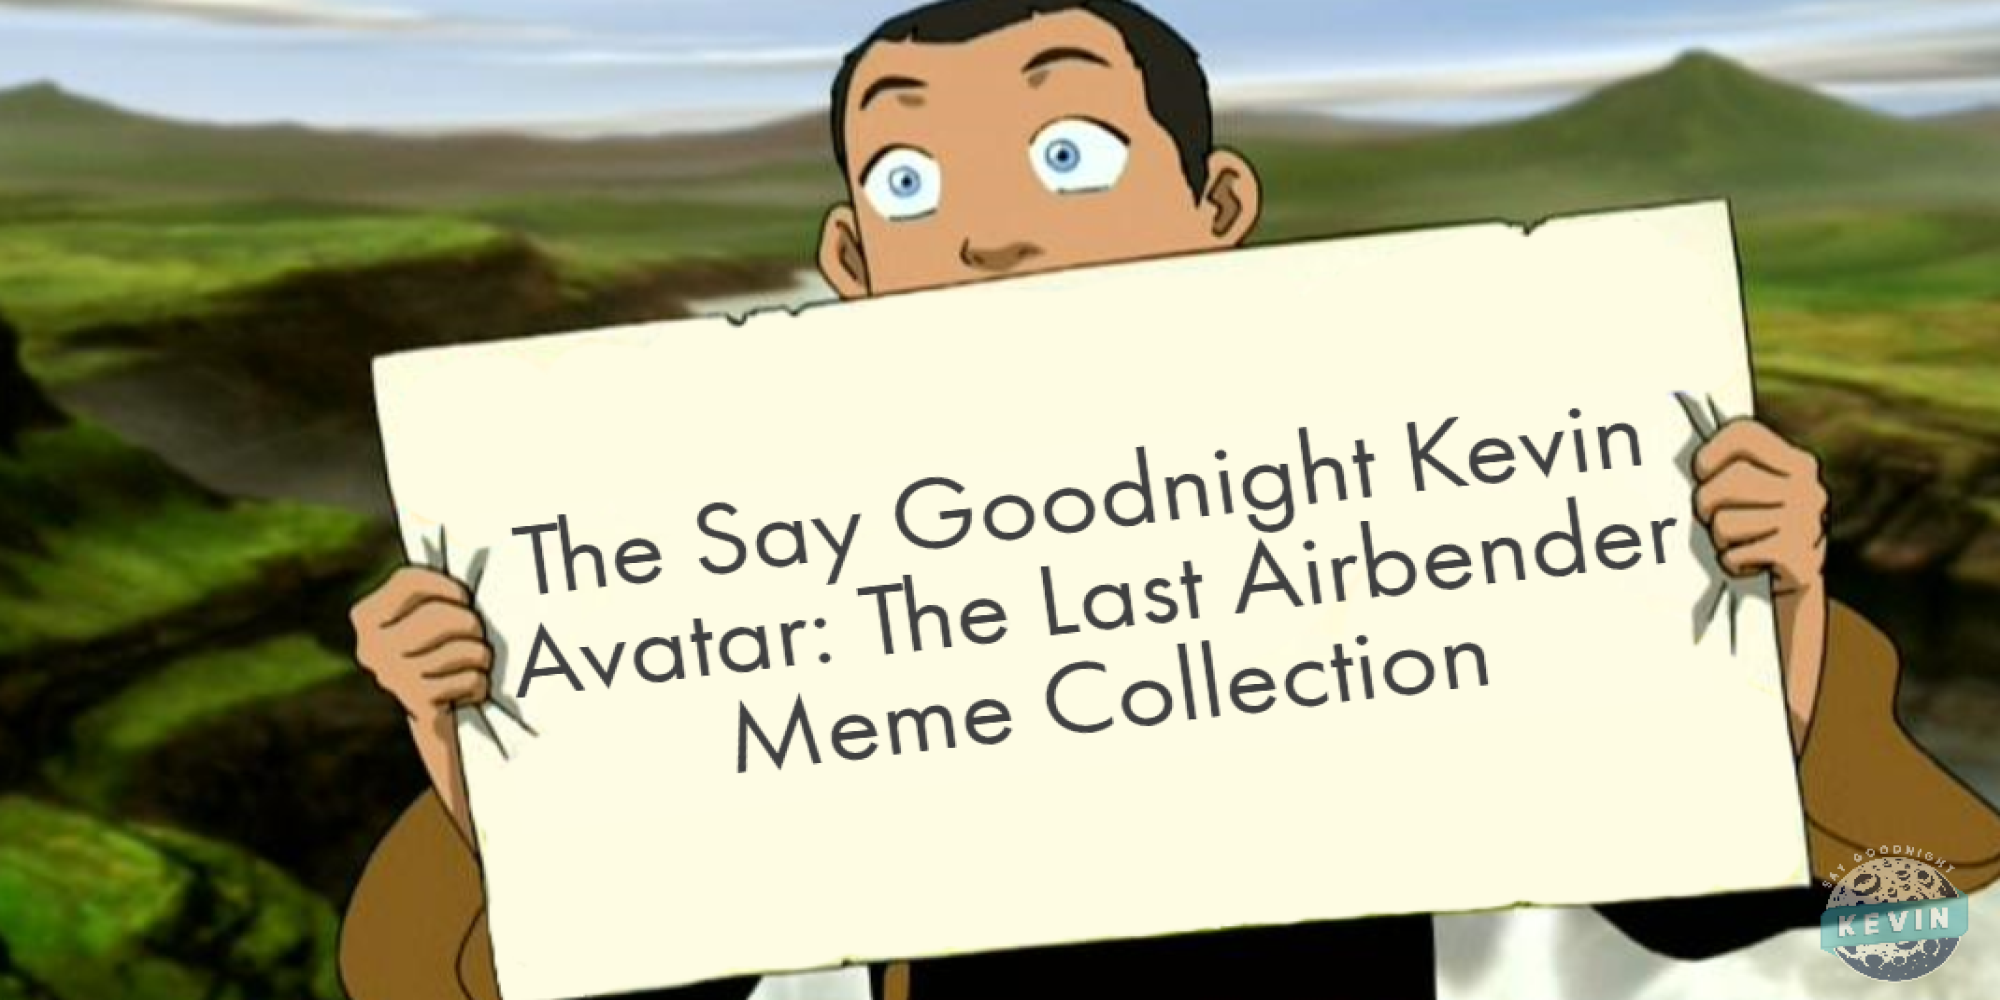 Năm 2024, chúng tôi hân hạnh giới thiệu bộ sưu tập meme Avatar: Kỷ niệm cuối cùng của Kevin. Tổng hợp các meme tuyệt vời nhất về truyền thuyết của Aang, Katara, Sokka, Zuko và Toph, bộ sưu tập này là lời tạm biệt đầy cảm xúc đối với một tác phẩm vĩ đại.